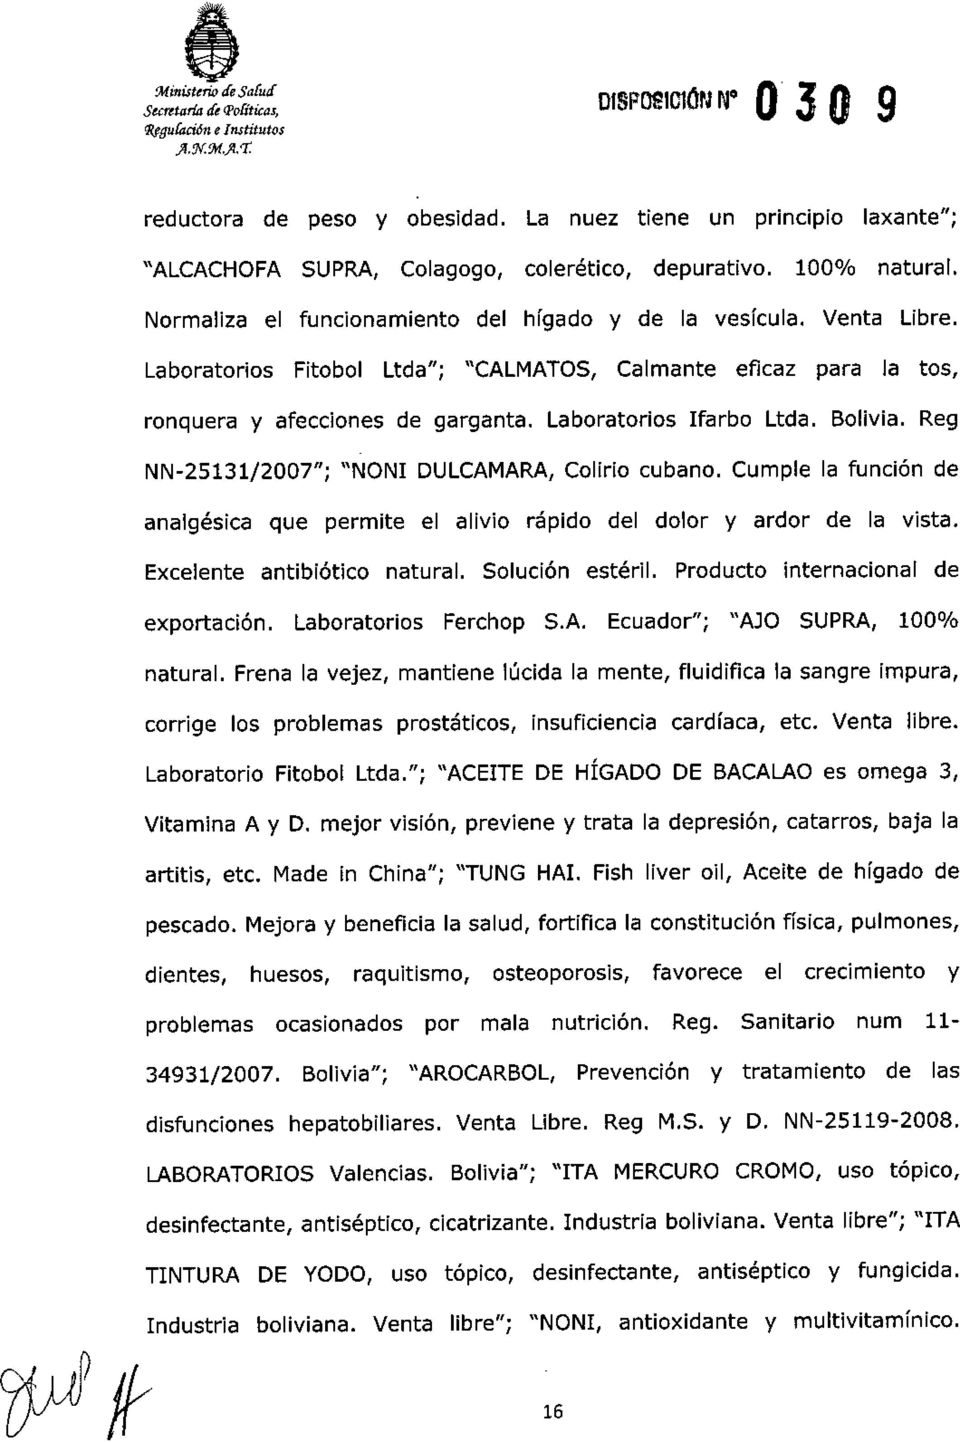 Laboratorios Fitobol Ltda"; "CALMATOS, Calmante eficaz para la tos, ronquera y afecciones de garganta. Laboratorios Ifarbo Ltda. Bolivia. Reg NN-25131/2007"; "NONI DULCAMARA,Colirio cubano.